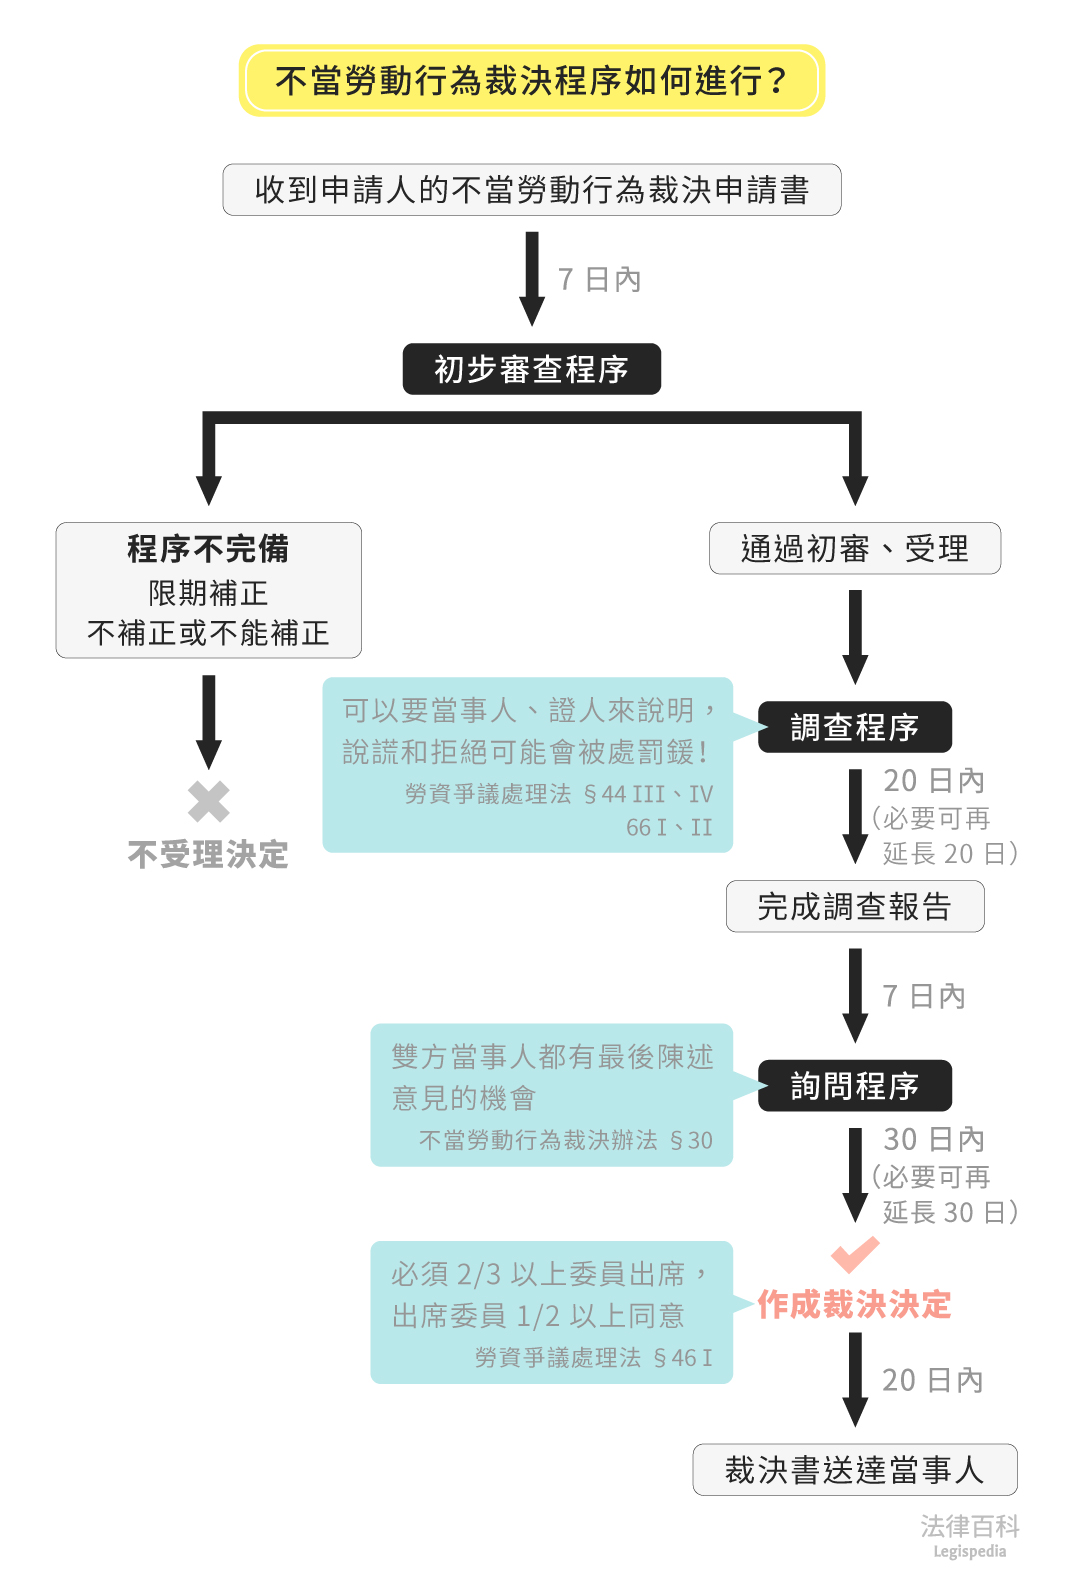 圖1　不當勞動行為裁決程序如何進行？||資料來源：匿名　/　繪圖：Yen